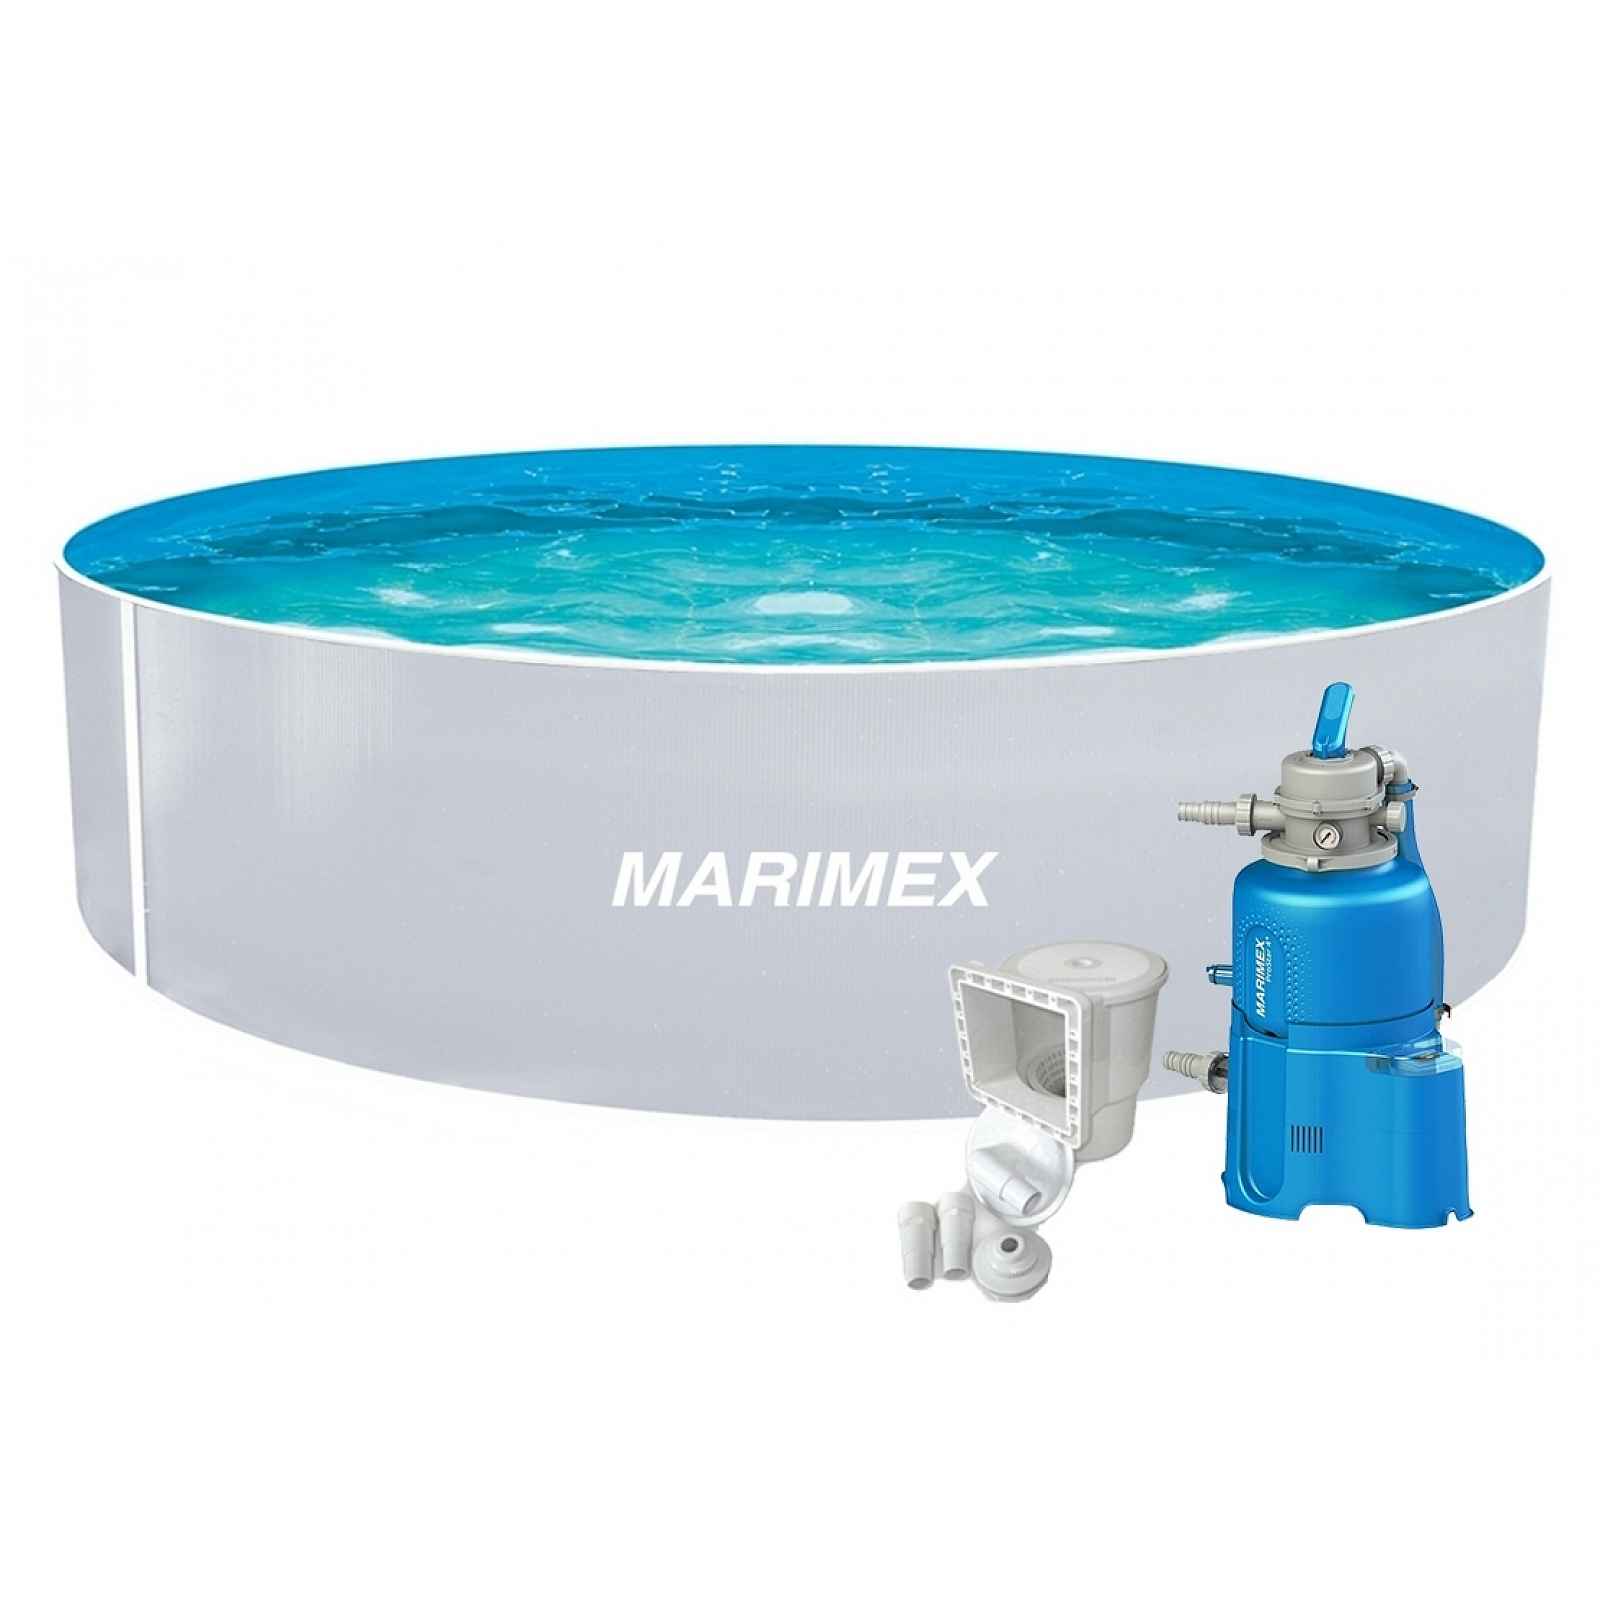 Marimex Bazén Orlando 3,66x0,91 m s pískovou filtrací a příslušenstvím - motiv bílý